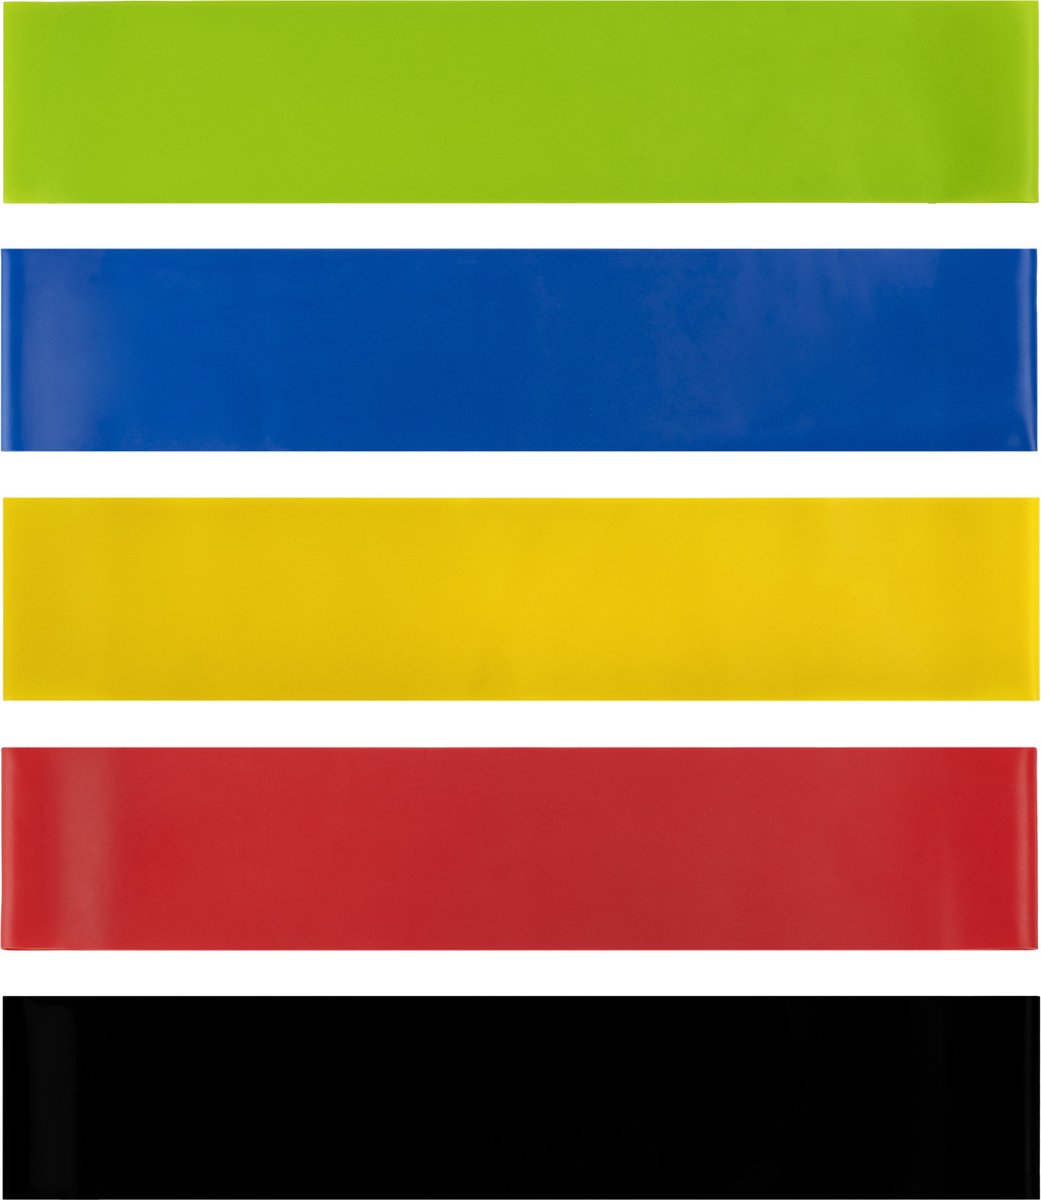 RYZOR Weerstandsbanden set van 5 - Resistance band voor benen en billen - Fitness elastiek - Fitnessband - Trainingsband - Gymnastiekband - Workout voor fitness, krachttraining en thuissporten - Elastiek - groen, blauw, geel, rood en zwart